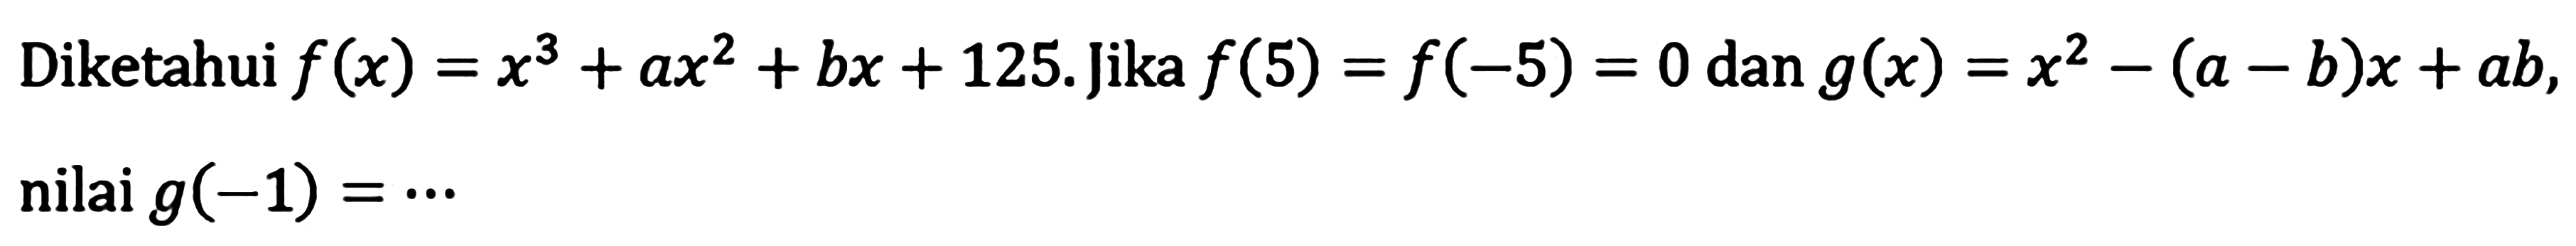 Diketahui f(x)=x^3+ax^2+bx+125. Jika f(5)=f(-5)=0 dan g(x)=x^2-(a-b)x+ab, nilai g(-1)=...